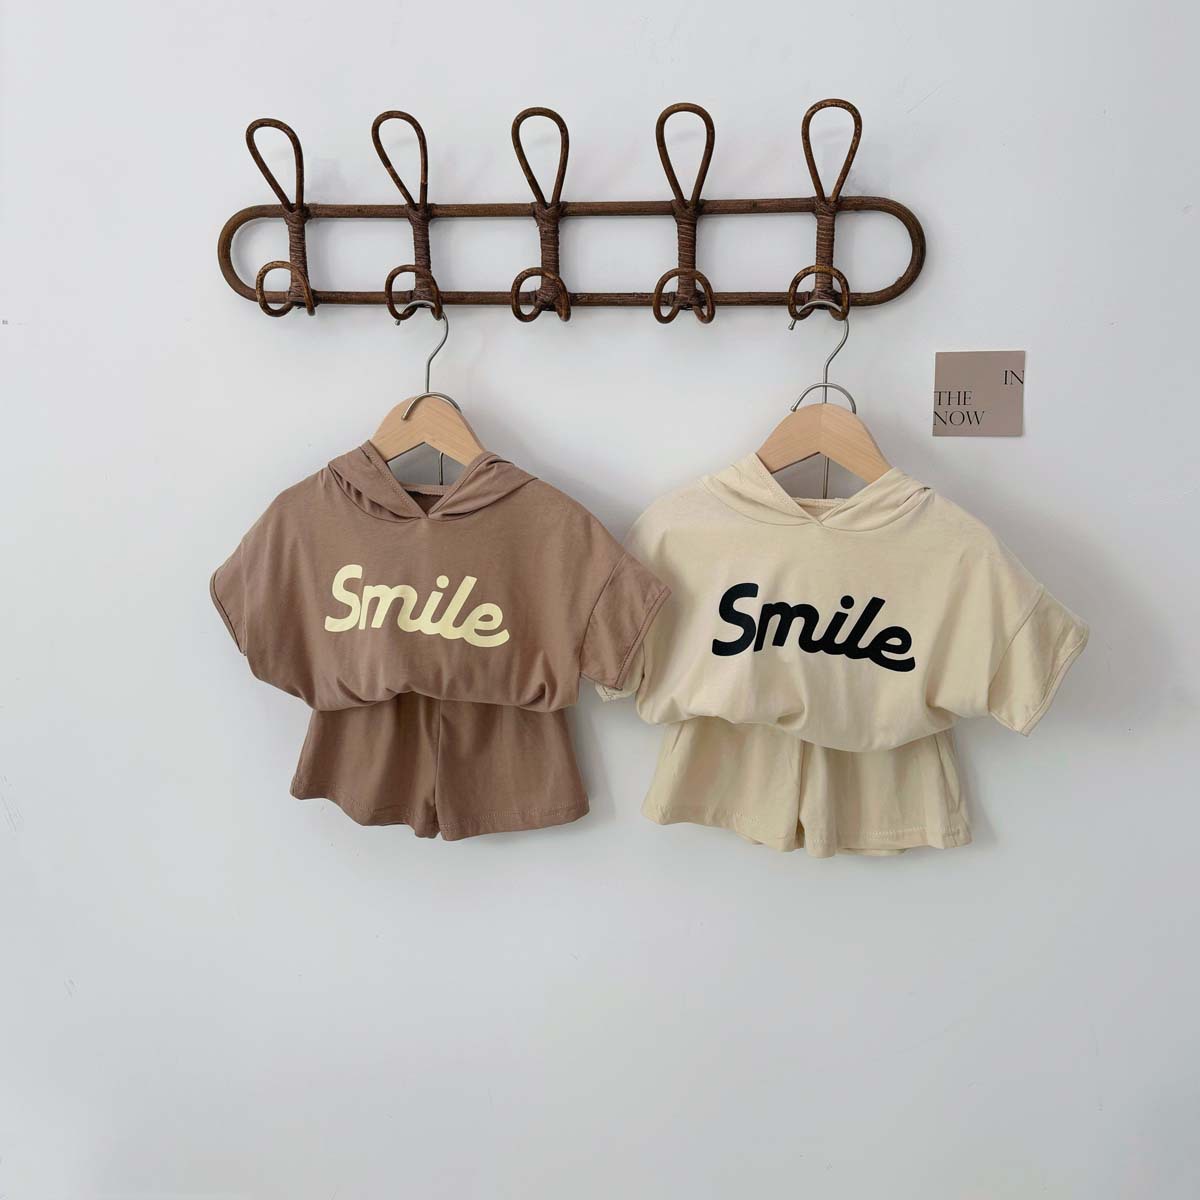 韩版婴童夏装衣服字母印花短袖套装新生儿男宝宝字母卫衣两件套装